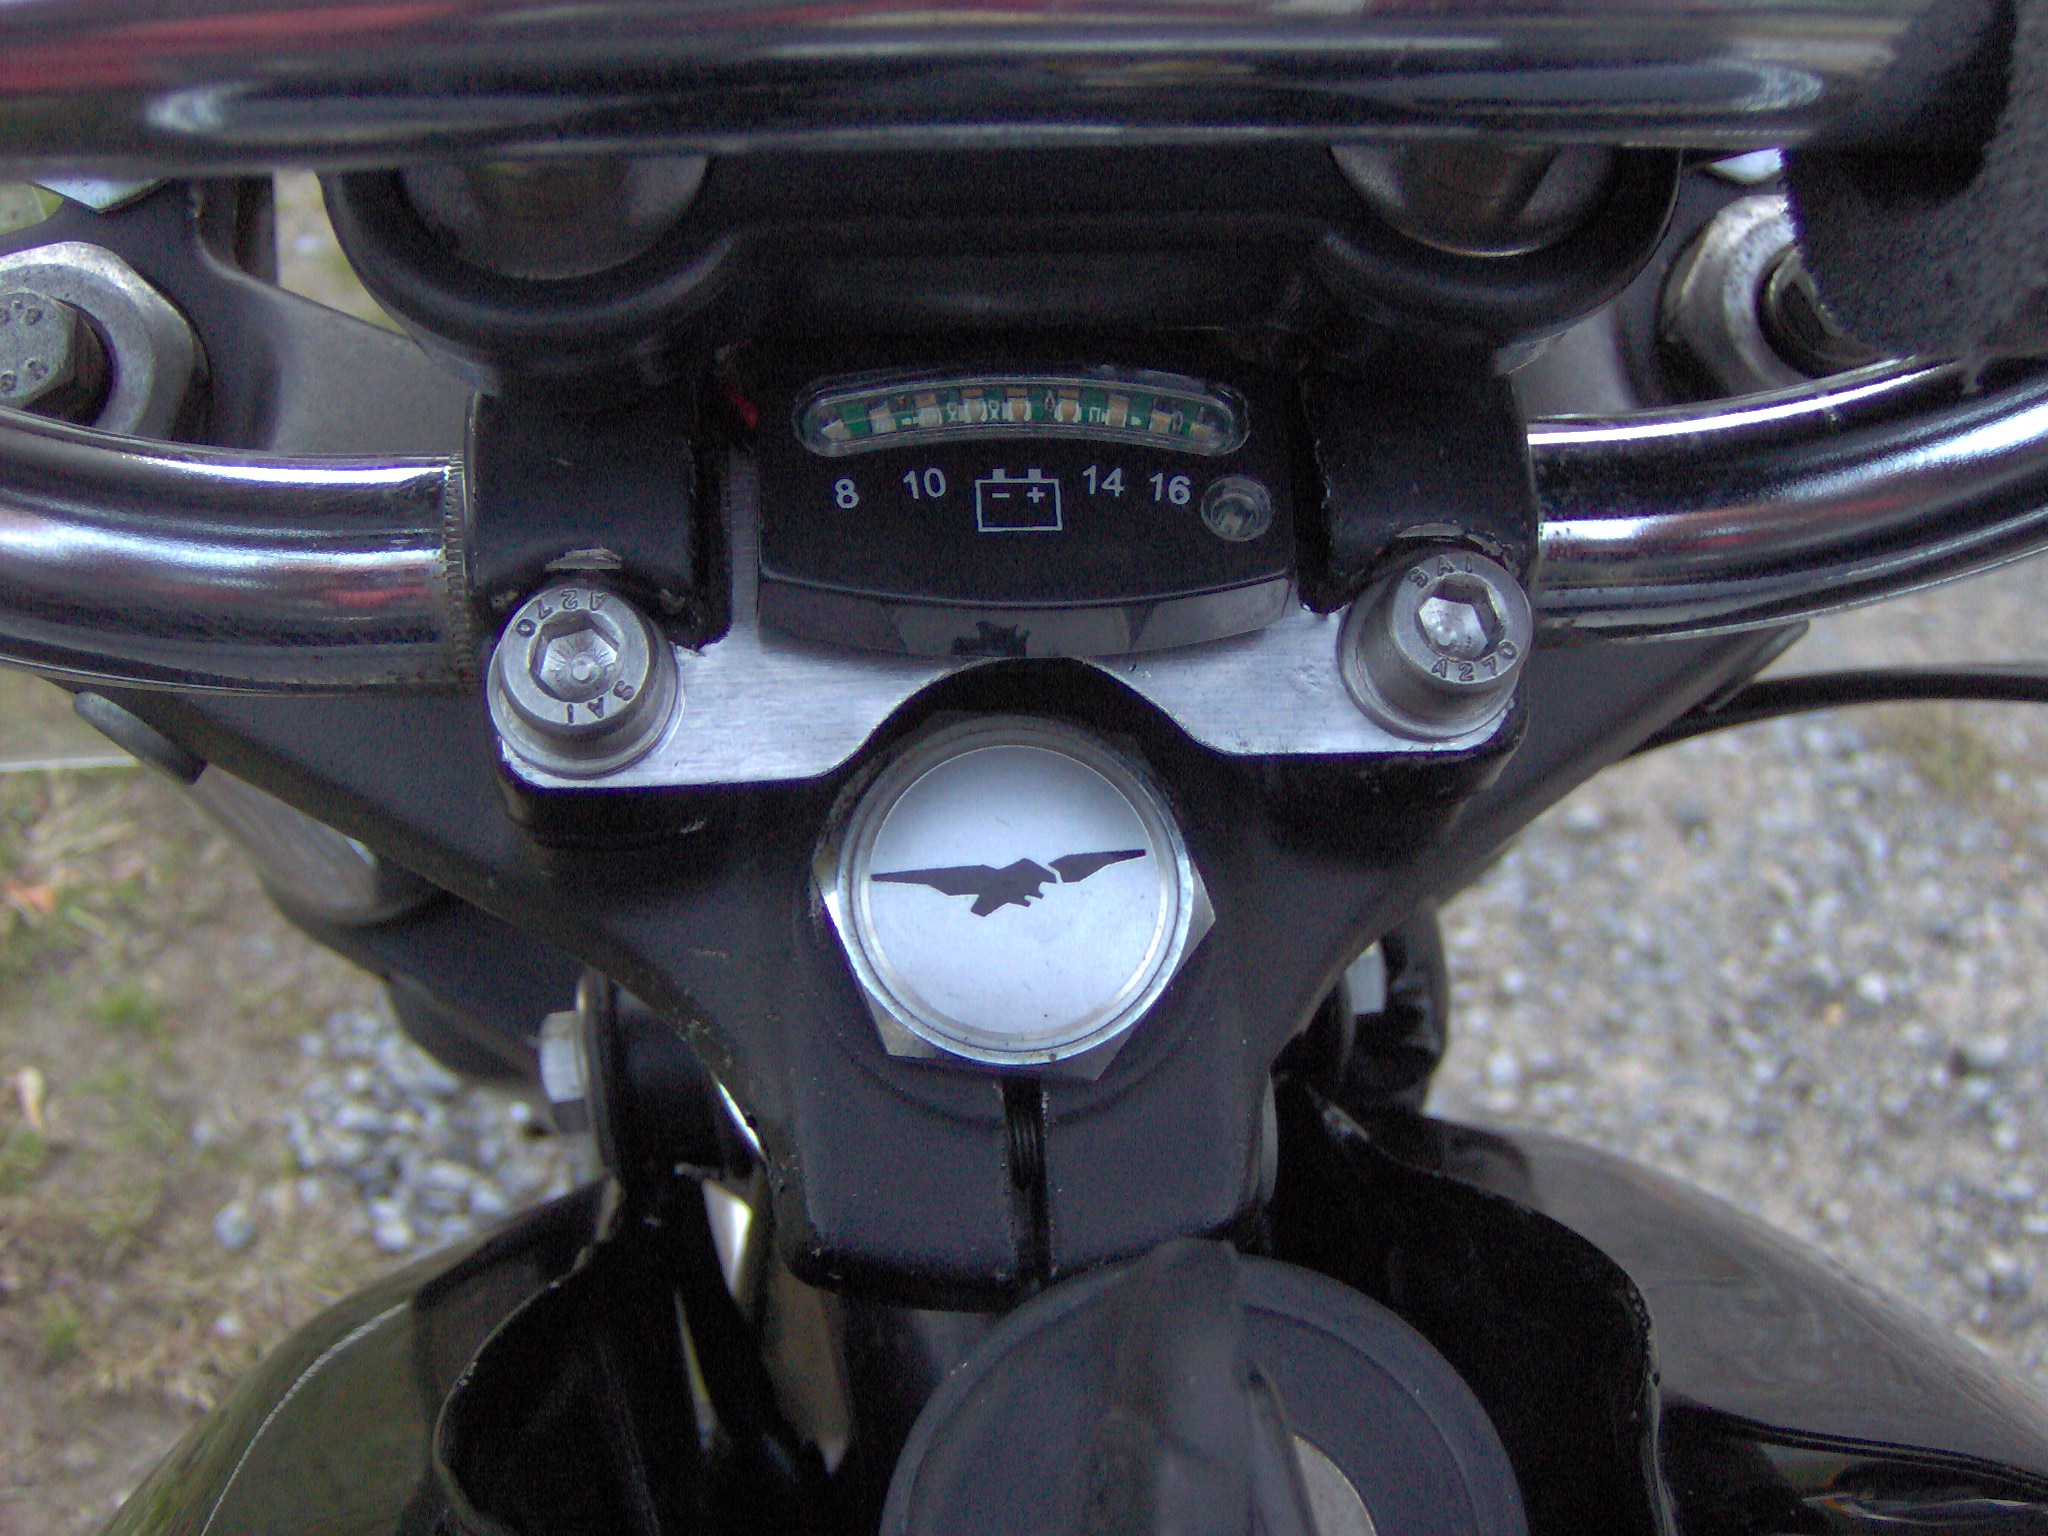 Kuryakyn battery gauge mounted on a Moto Guzzi I-Convert.